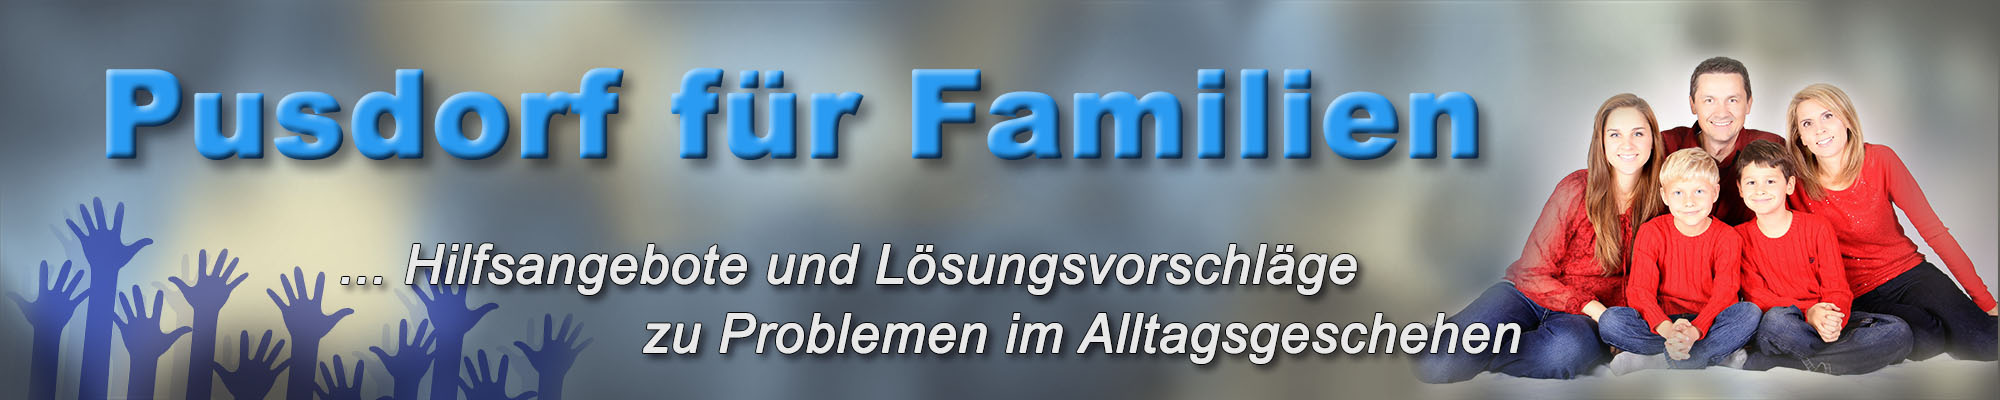 pusdorf.info - Beratung und Hilfe für Familien